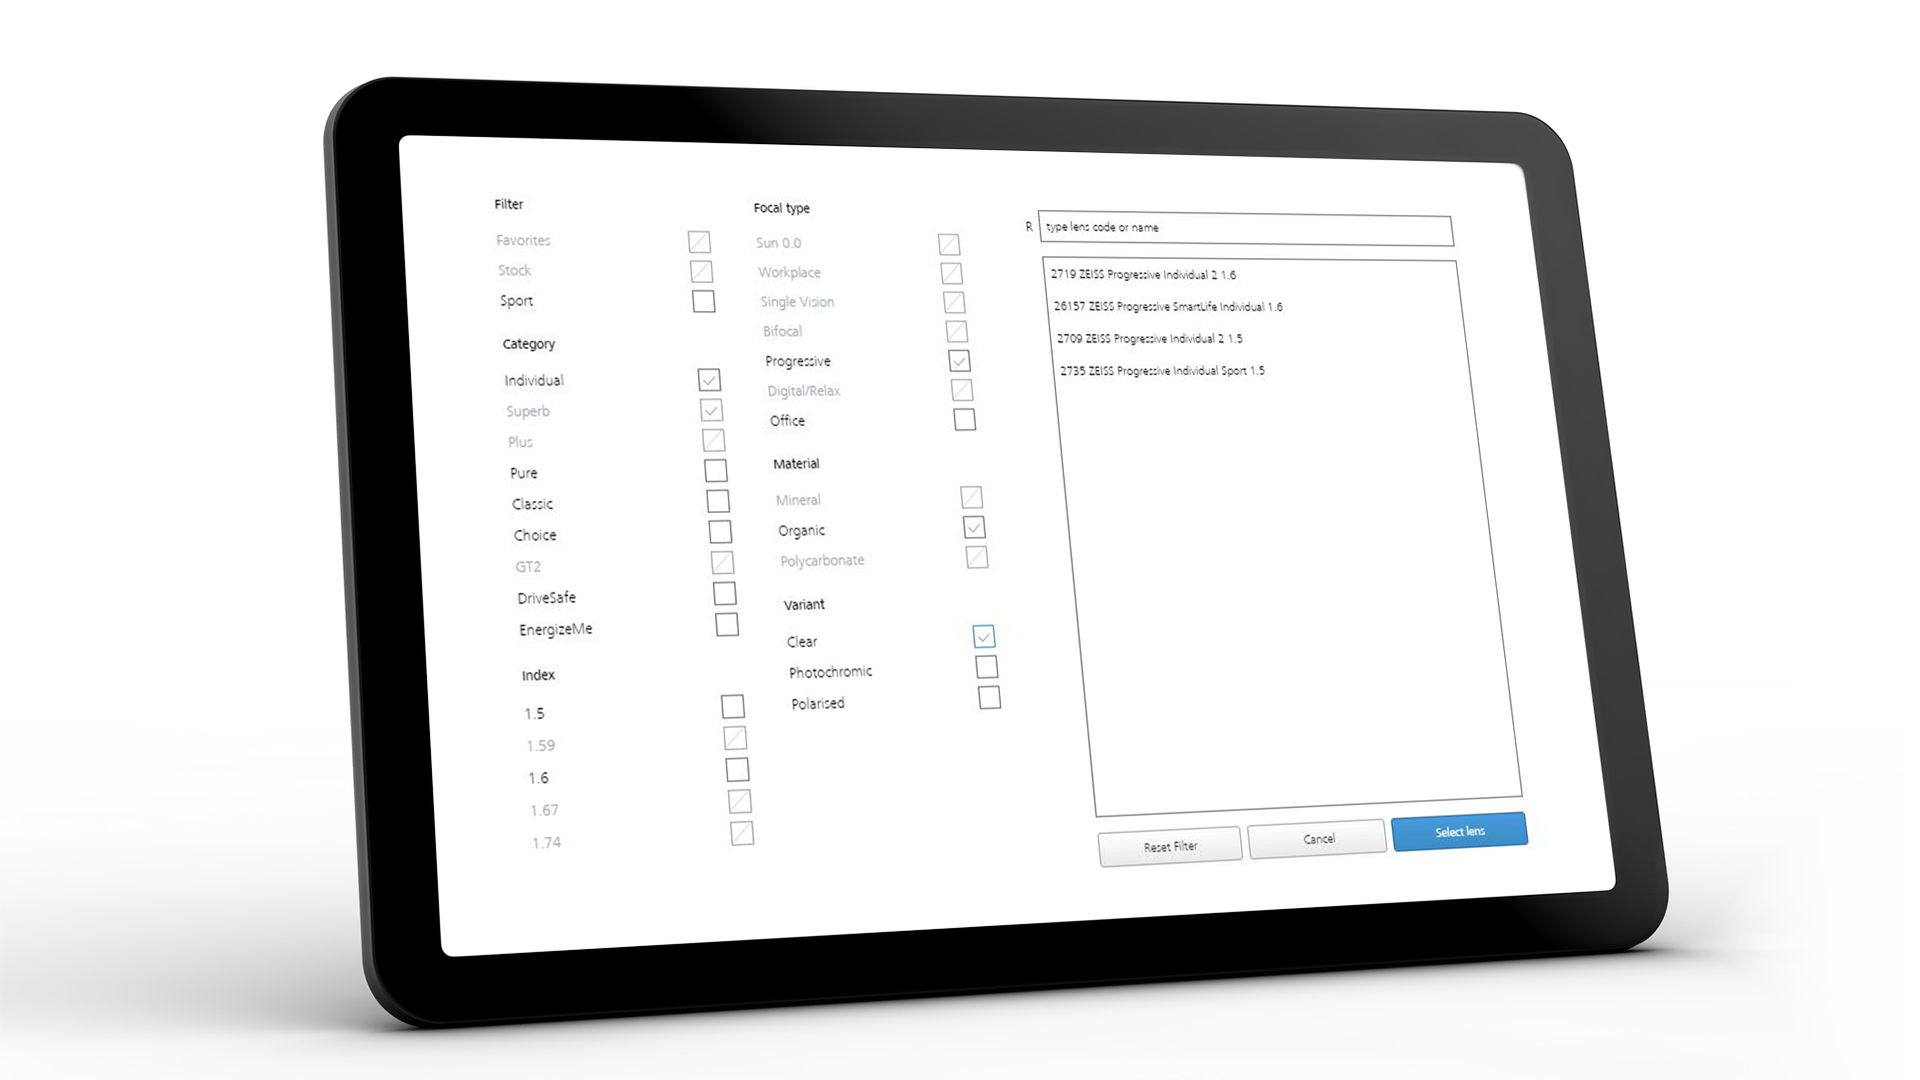 Schermo del tablet che mostra l'interfaccia ZEISS VISUSTORE per diversi ausili di inserimento 